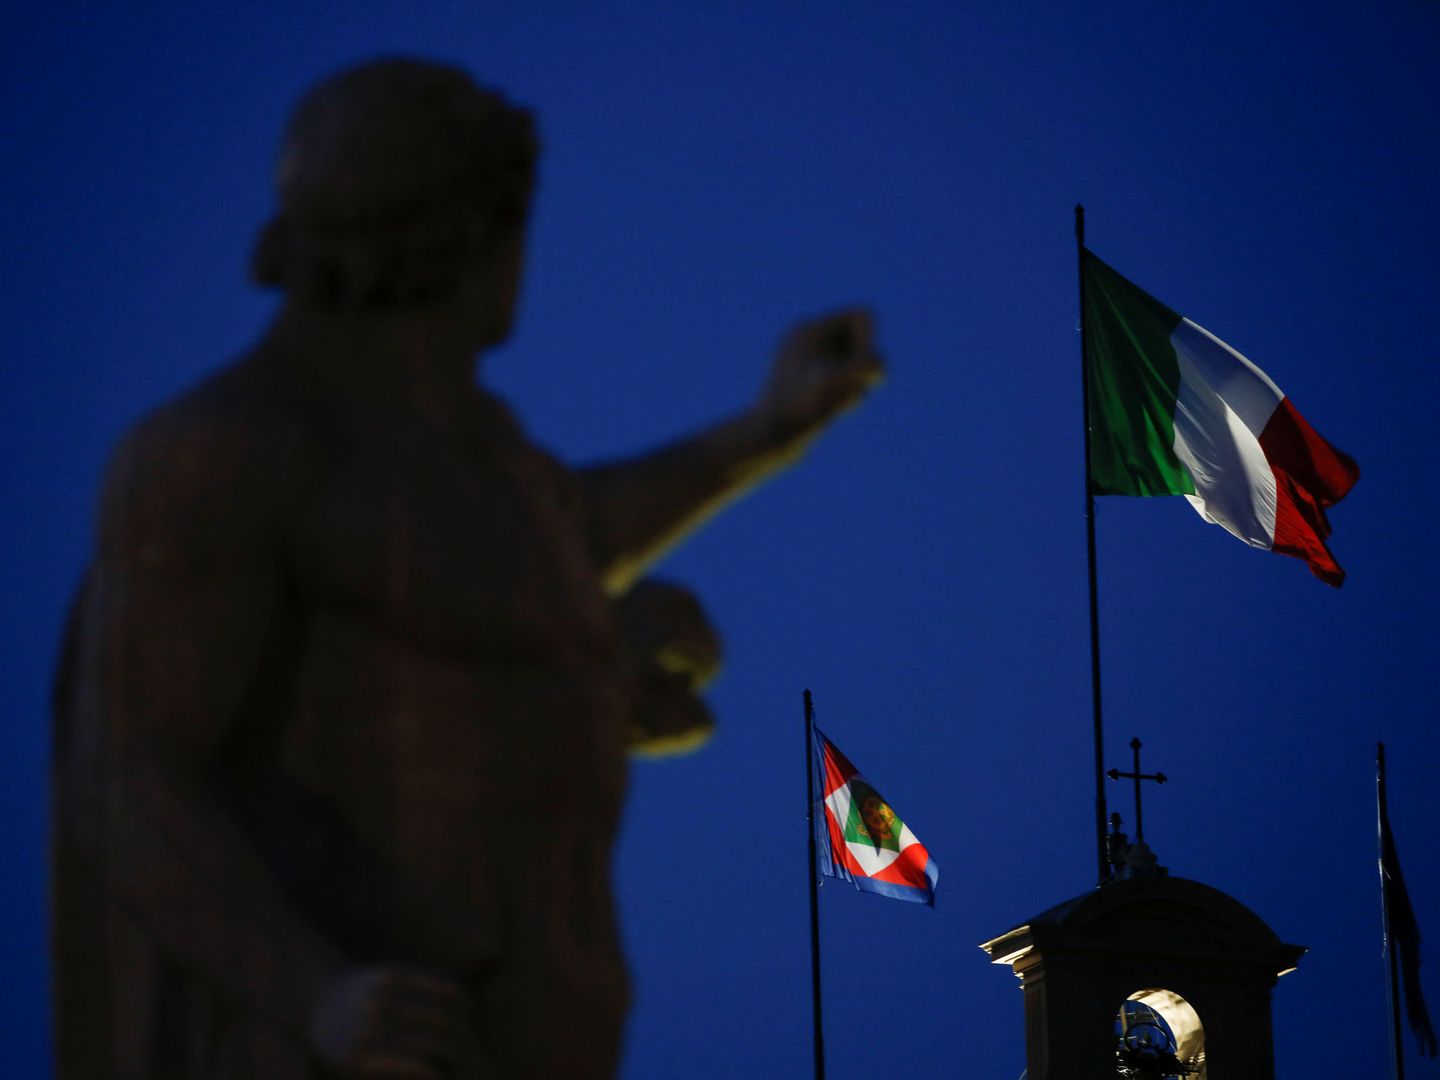 Vista de la bandera italiana en el palacio presidencial italiano. (Reuters)